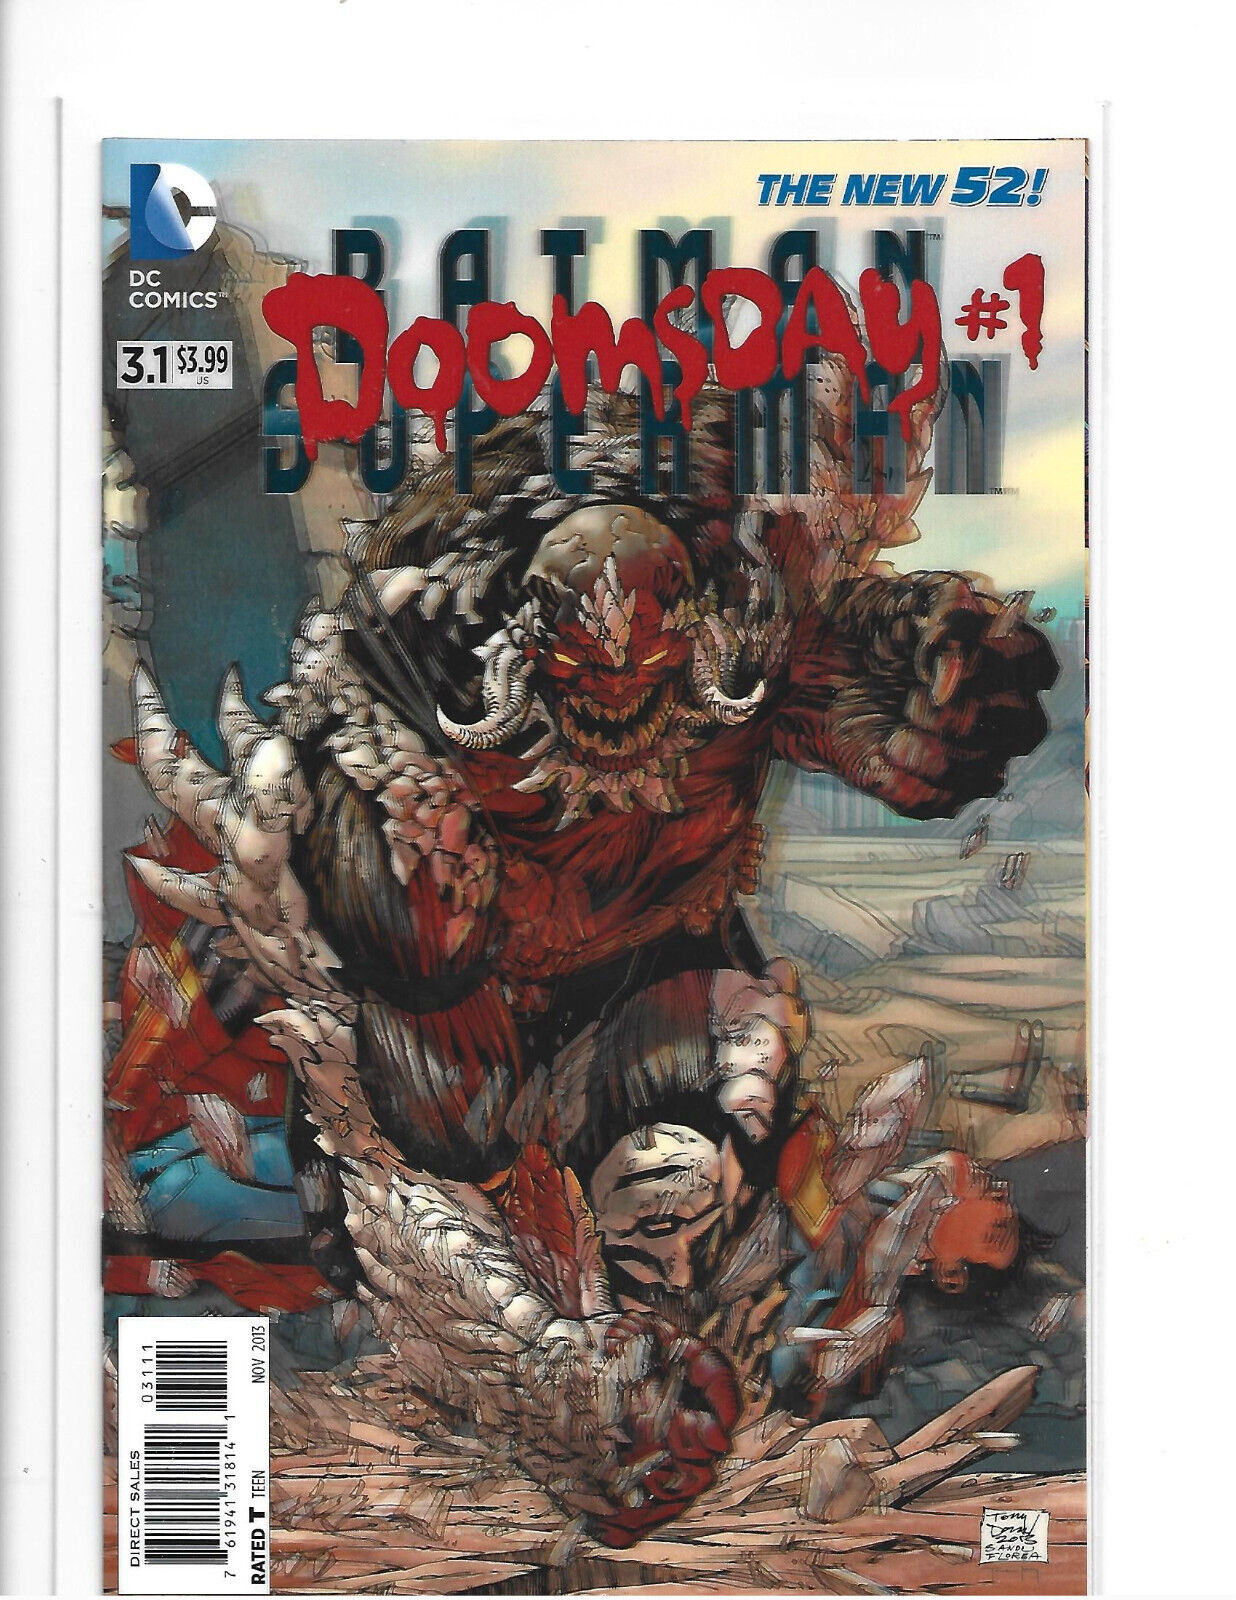 BATMAN / SUPERMAN # 3.1 * 3-D COVER * DC COMICS * 2015 * NEAR MINT